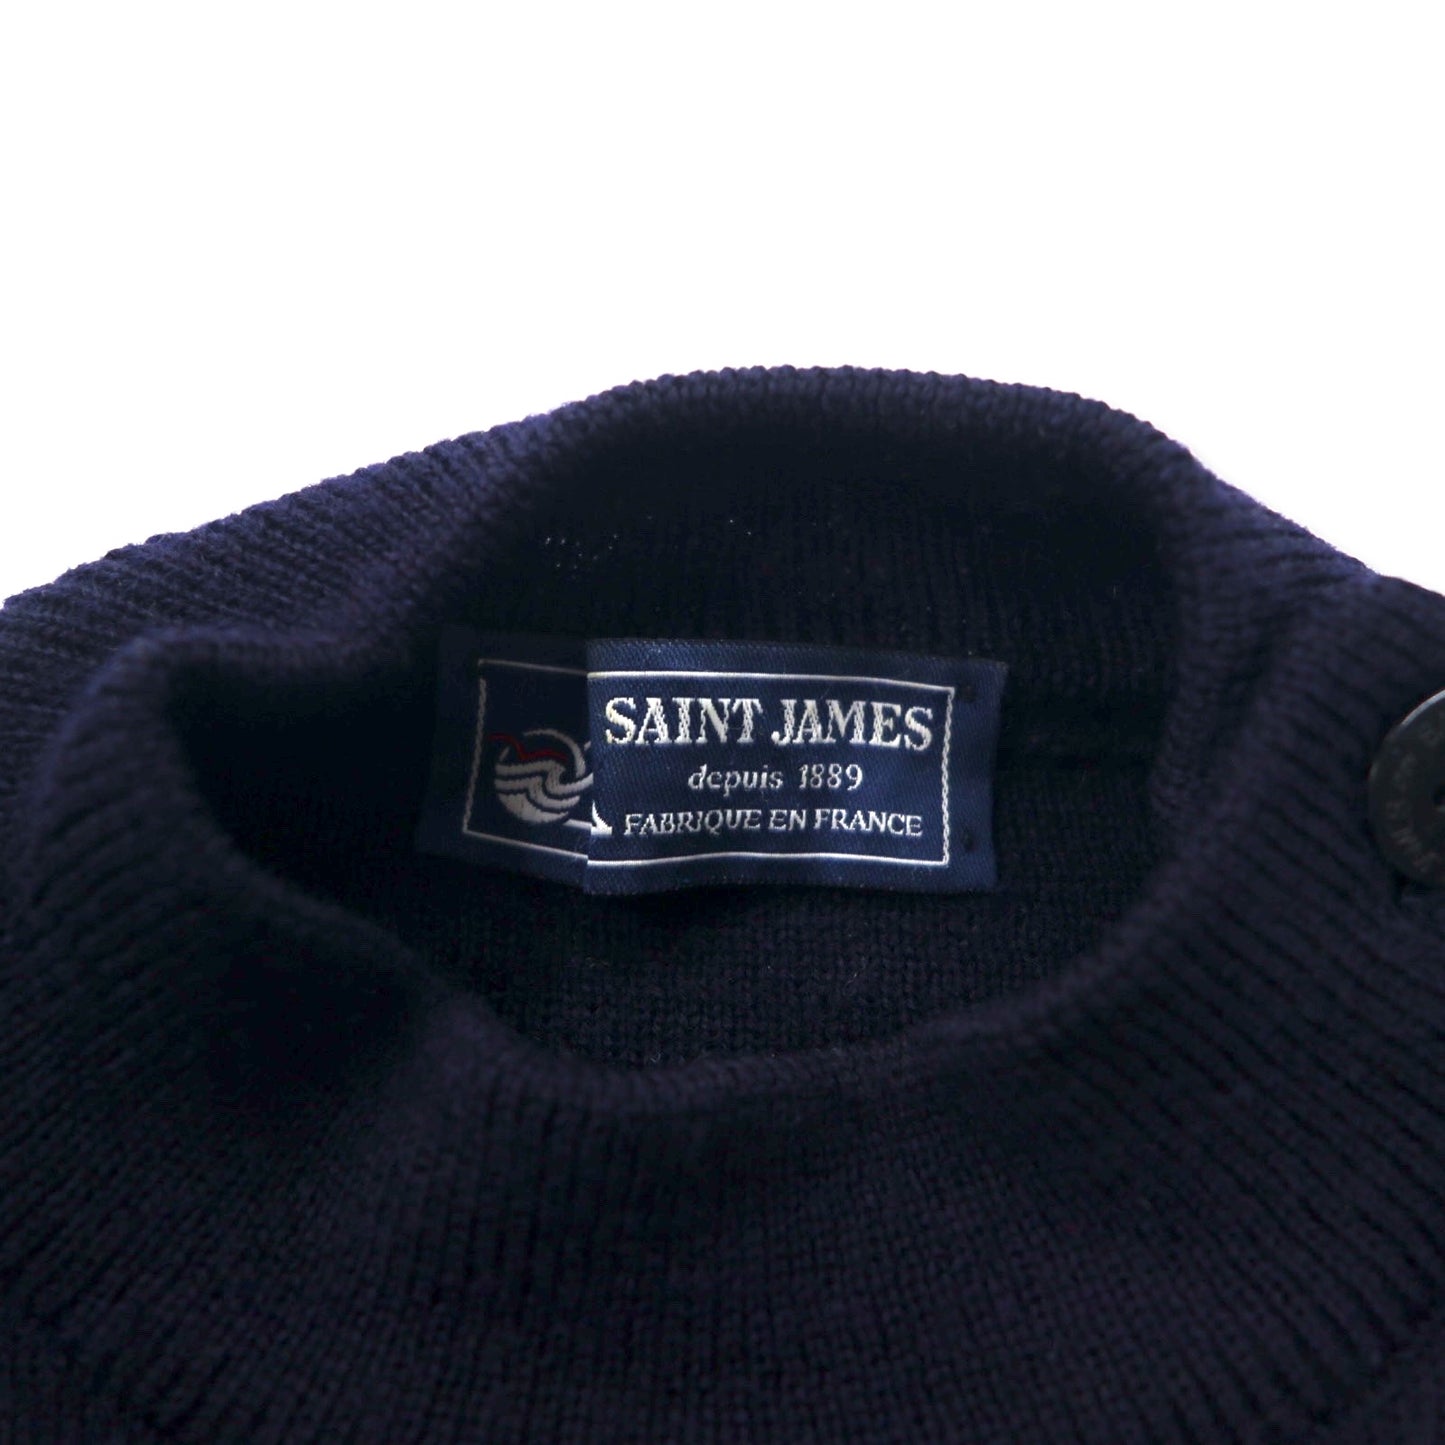 SAINT JAMES フランス製 ハイゲージニット マリンセーター L ネイビー ウール 羊毛 肩ボタン